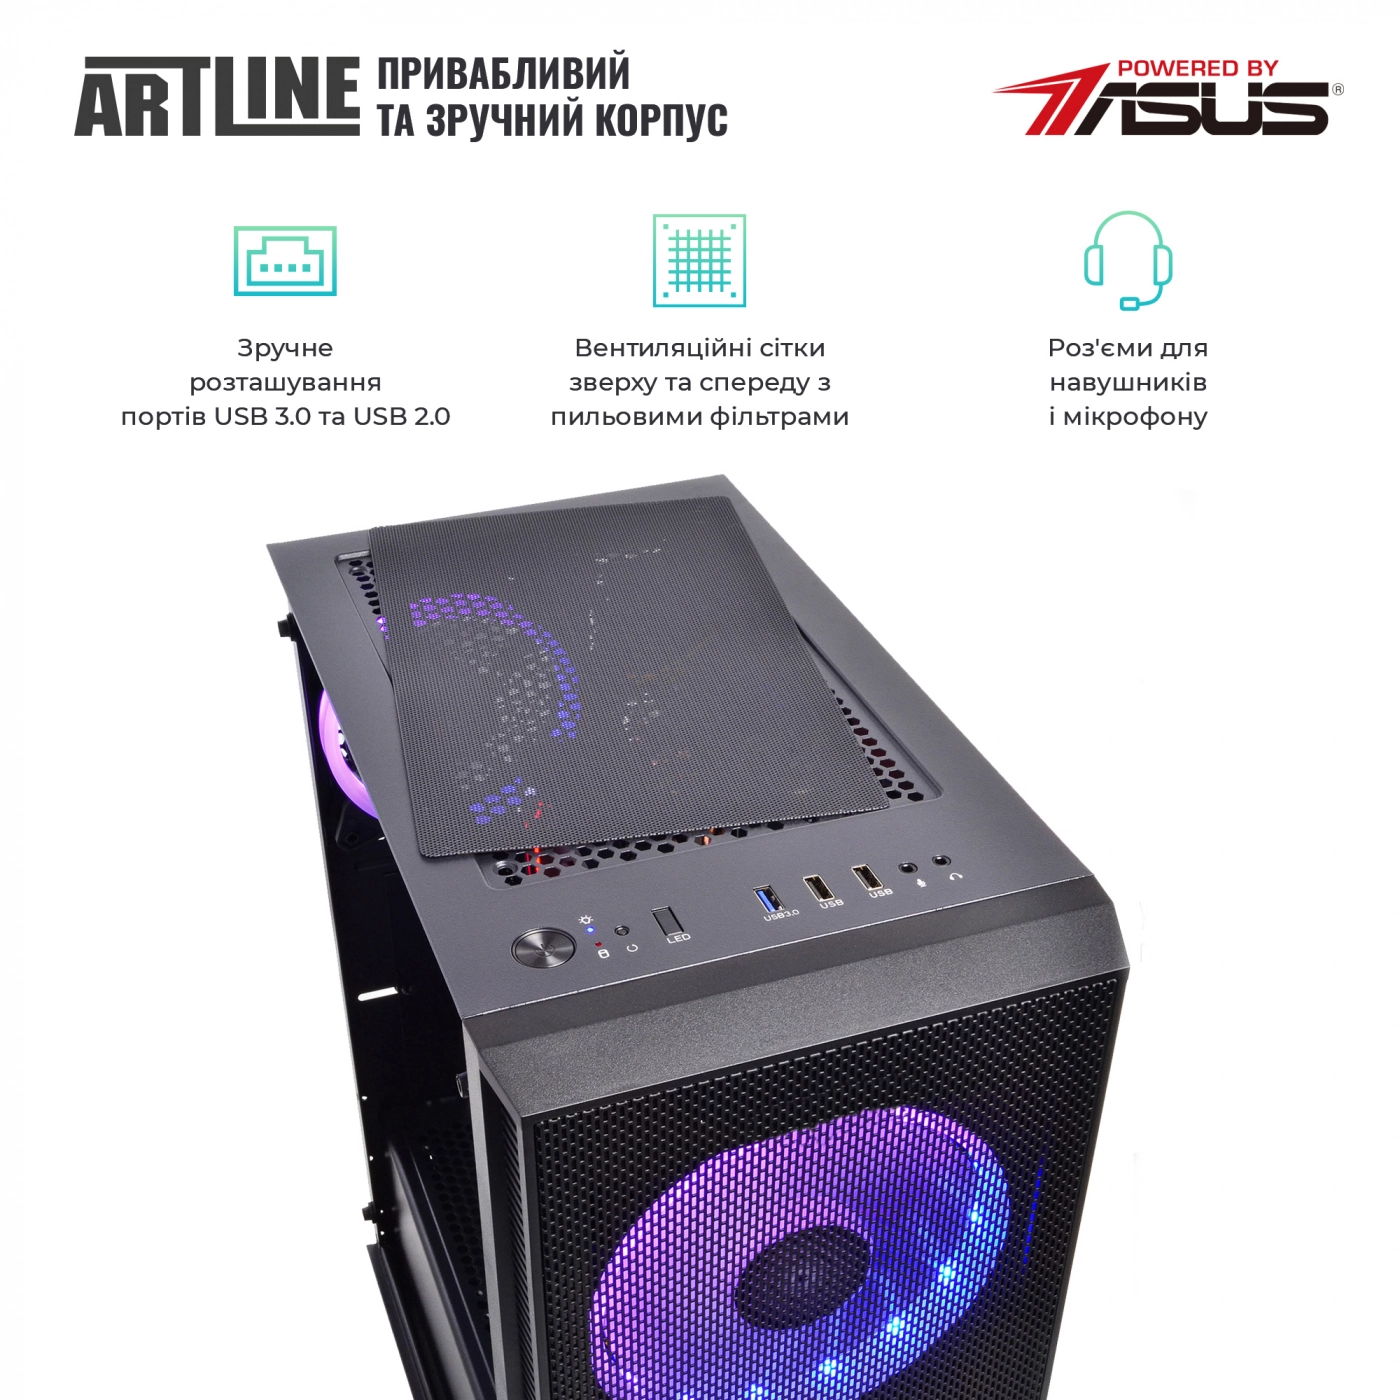 Купить Компьютер ARTLINE Gaming X67v17 - фото 4